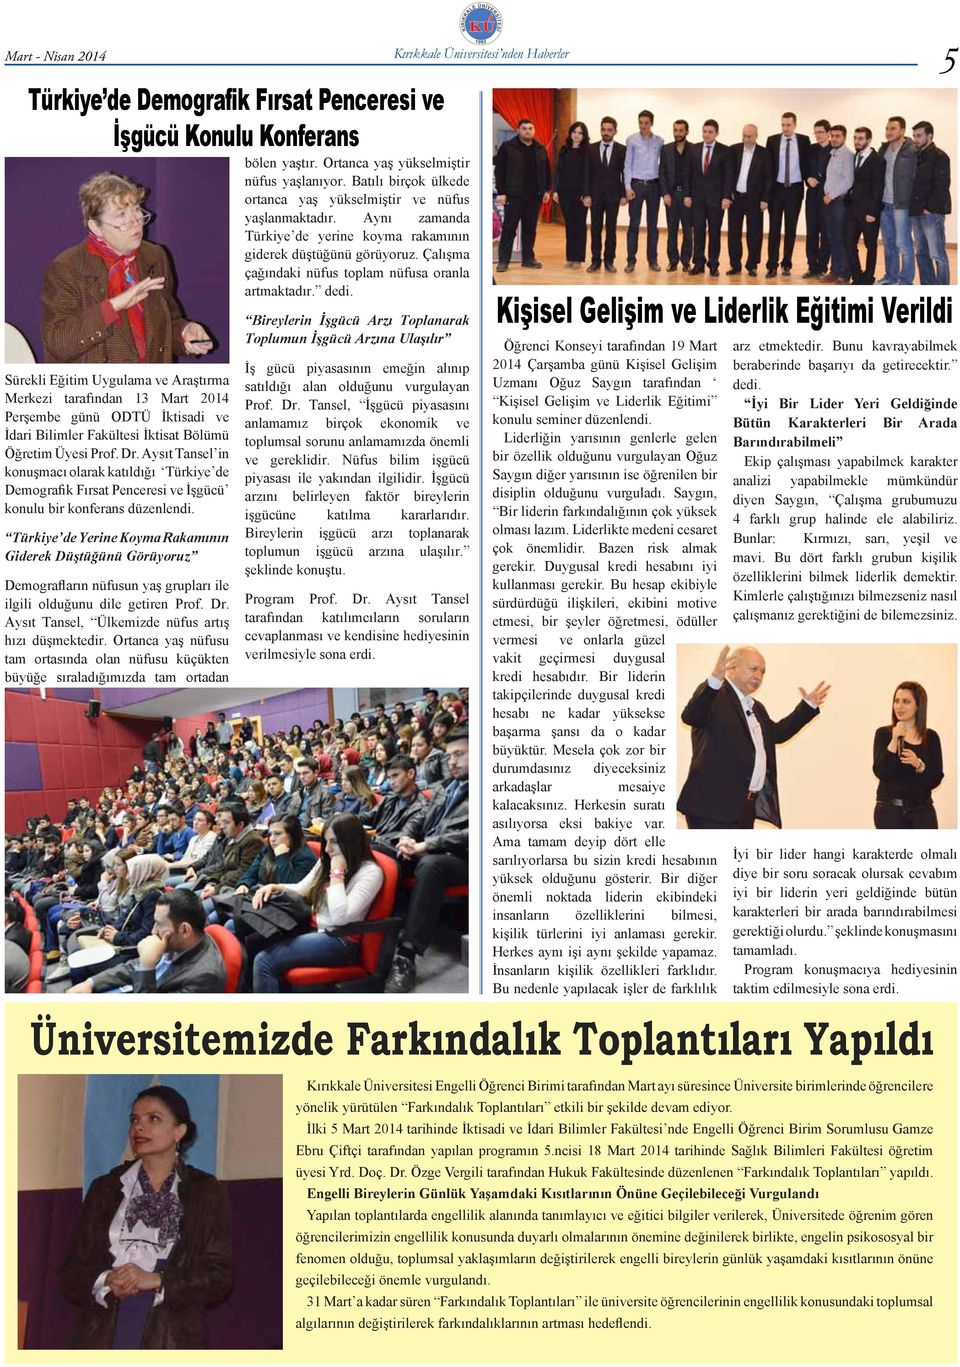 Aysıt Tansel in konuşmacı olarak katıldığı Türkiye de Demografik Fırsat Penceresi ve İşgücü konulu bir konferans düzenlendi.